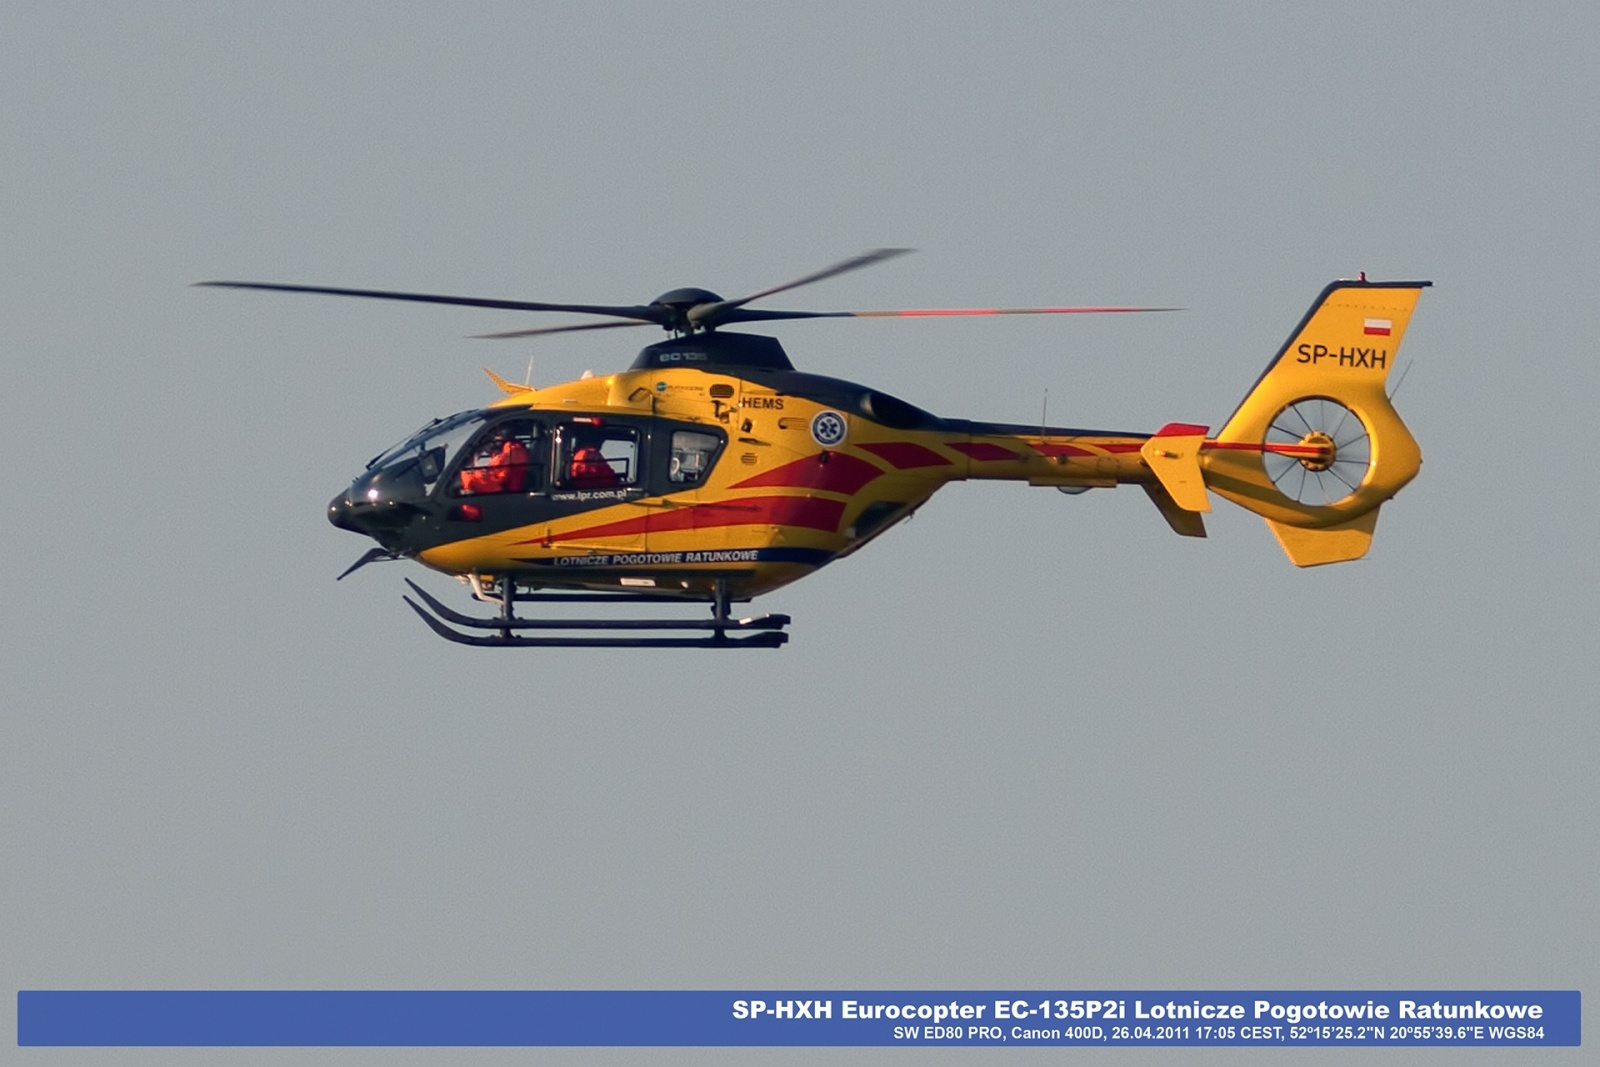 SP-HXH Eurocopter EC-135P2i Lotnicze Pogotowie Ratunkowe.jpg